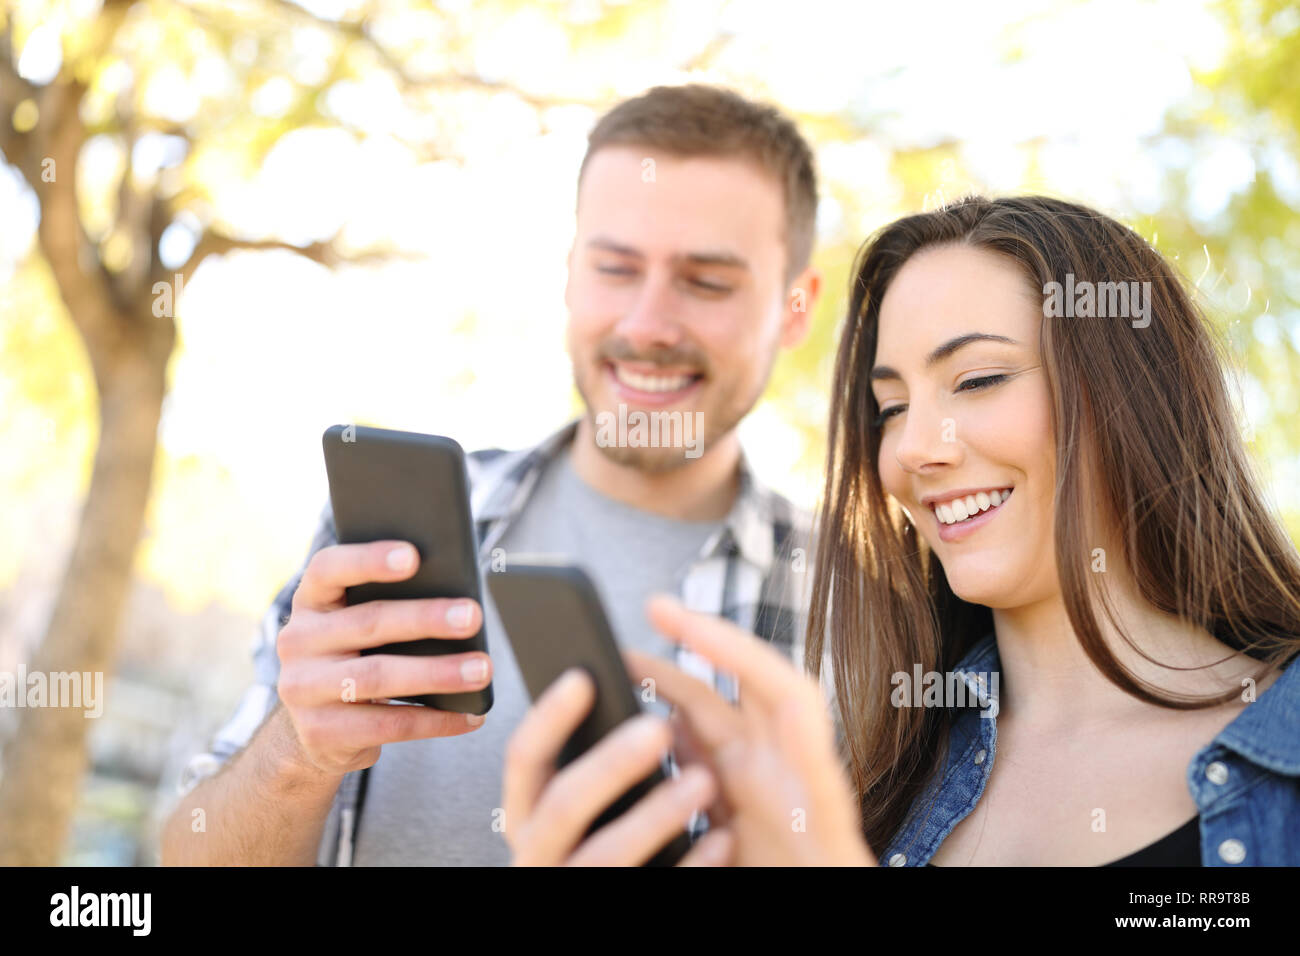 Zwei glückliche Freunde über ihre Smartphones stehen im Freien in einem Park Stockfoto